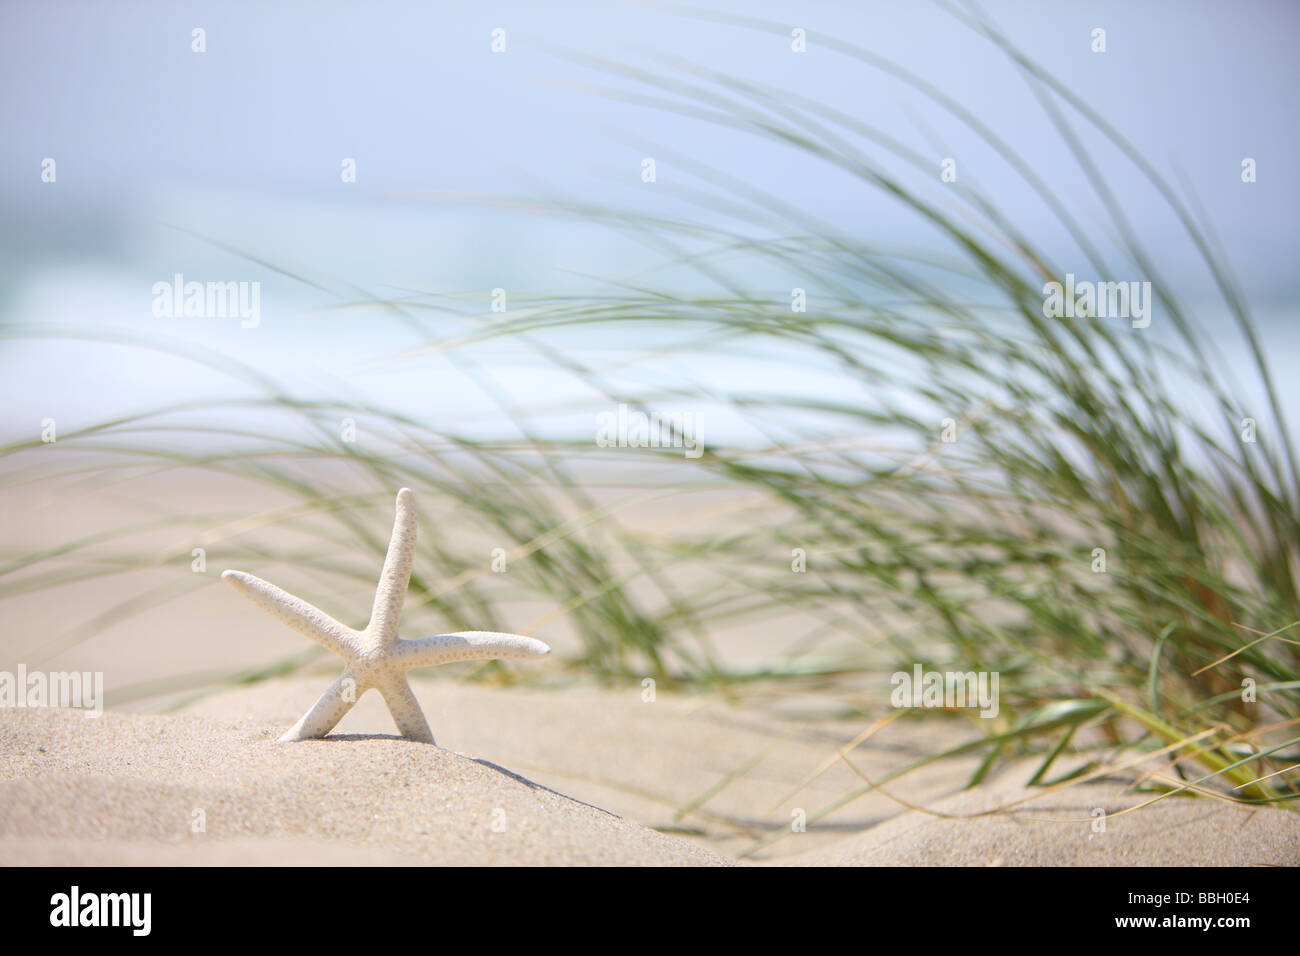 Seestern in Sand mit Wind geblasen Rasen im Hintergrund Stockfoto